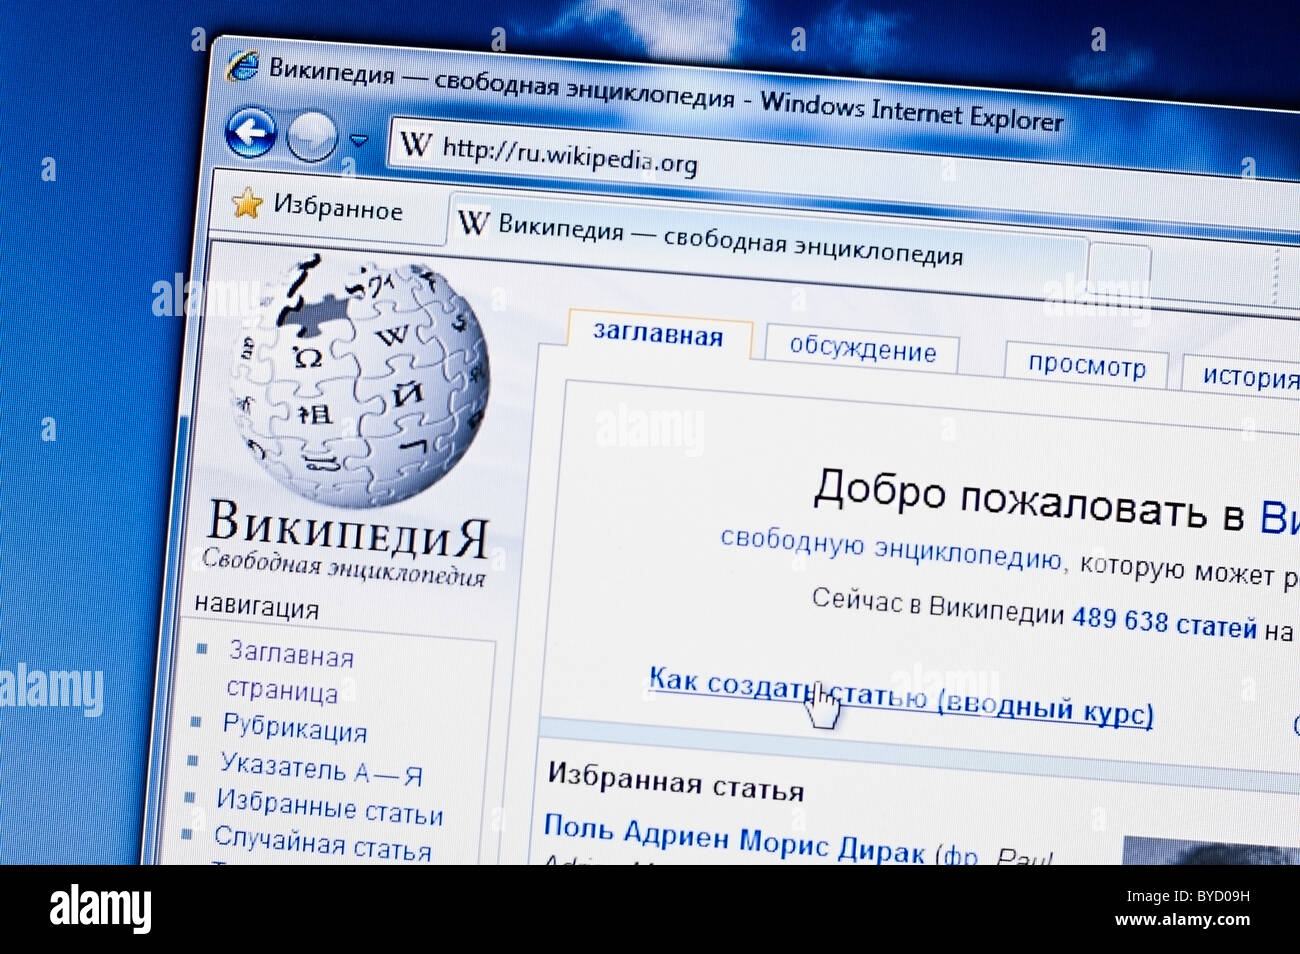 Википедия https ru wikipedia org. Википедия. Интернет энциклопедия это. Википедия энциклопедия. Wiki.